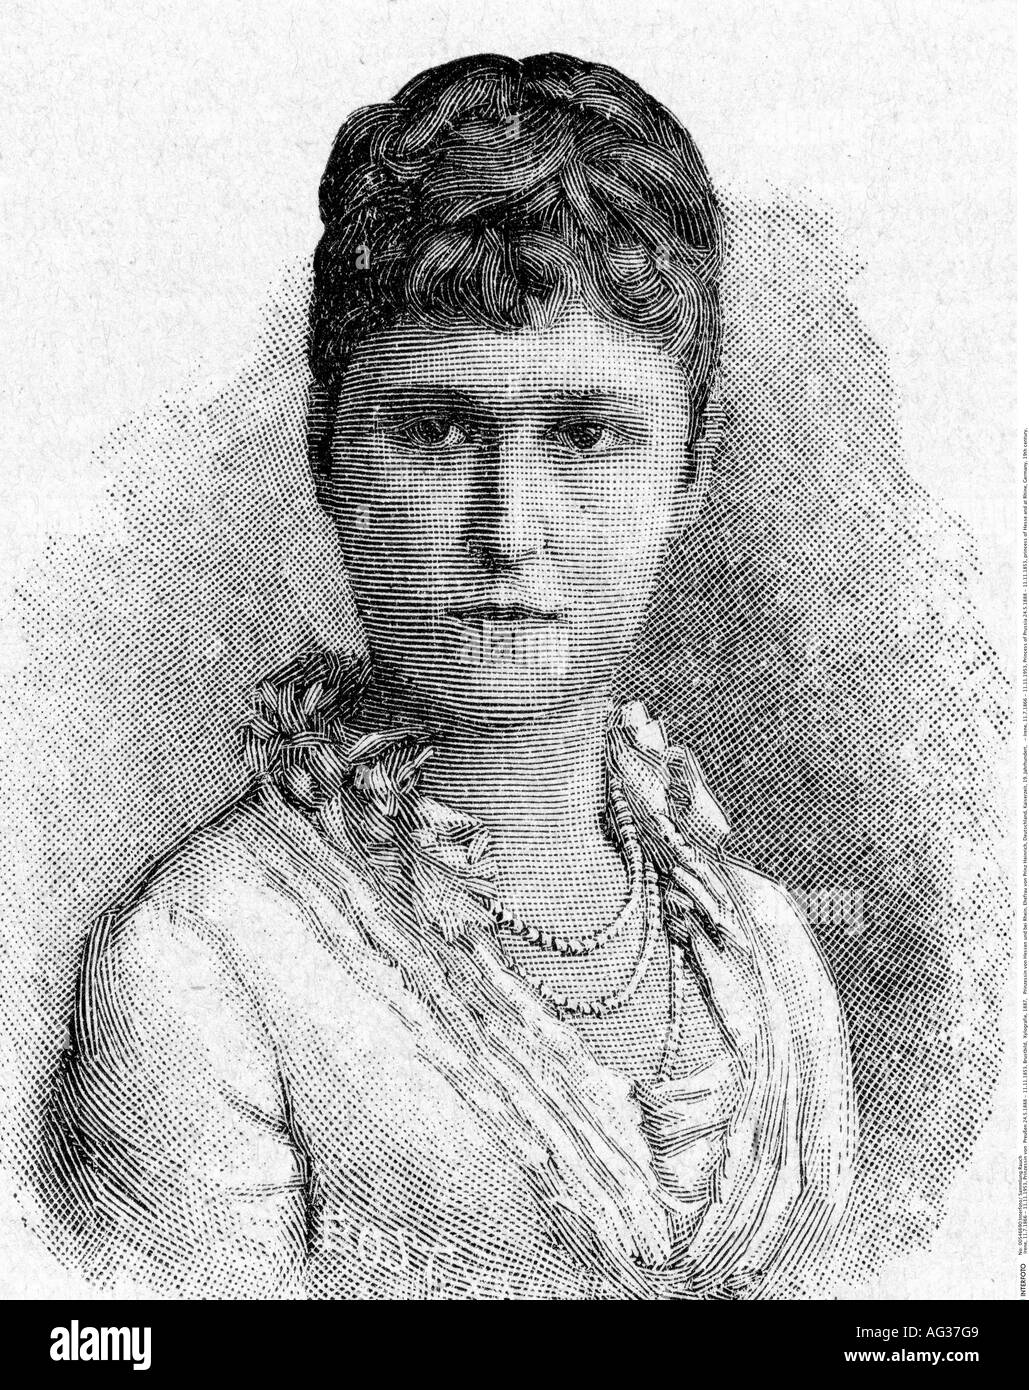 Irene, 11.7.1866 - 11.11.1953, Principessa di Prussia 24.5.1888 - 11.11.1953, ritratto, incisione in legno, 1887, , Foto Stock